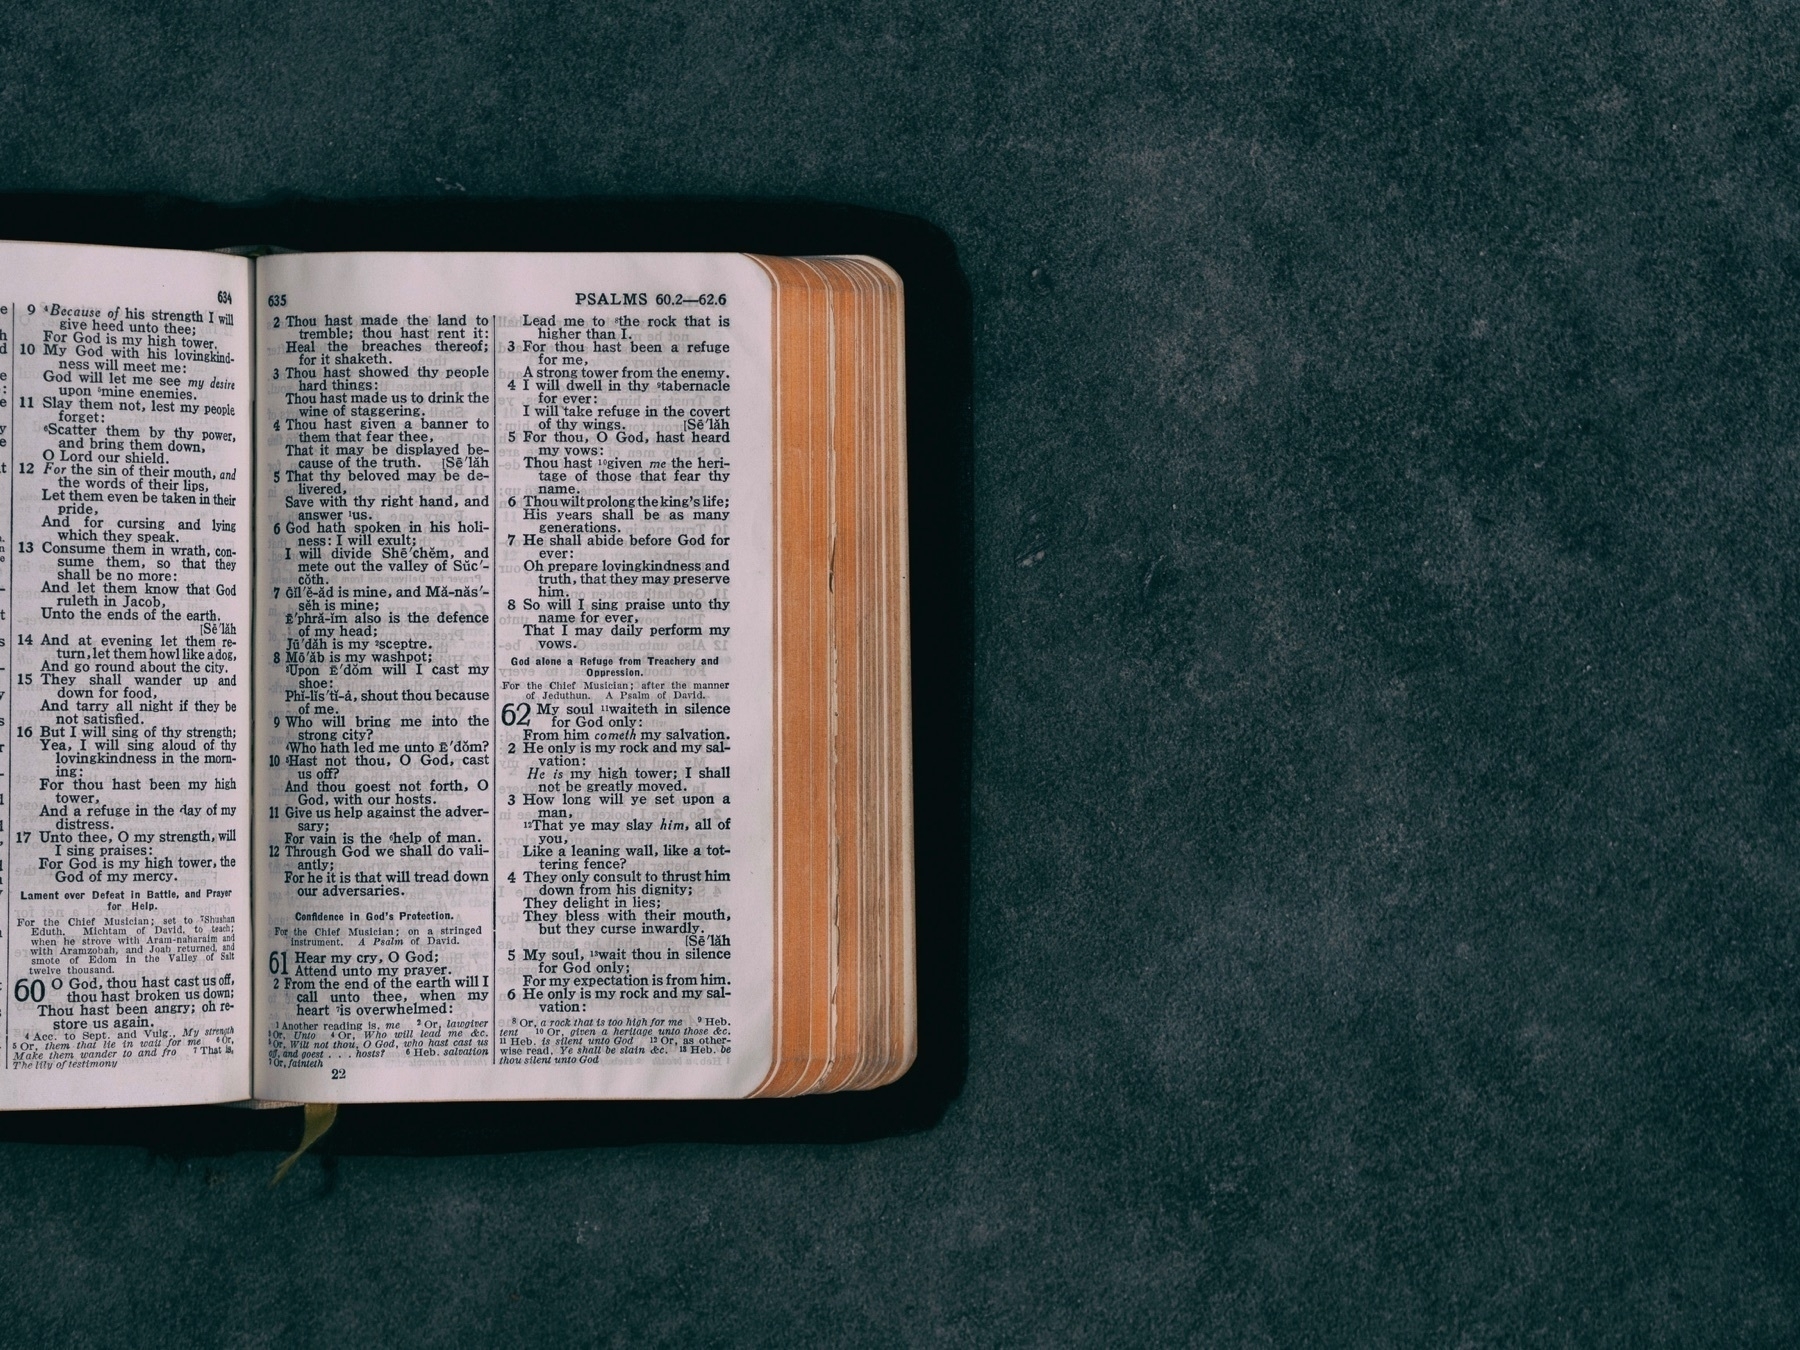 A bible open on an a gray countertop